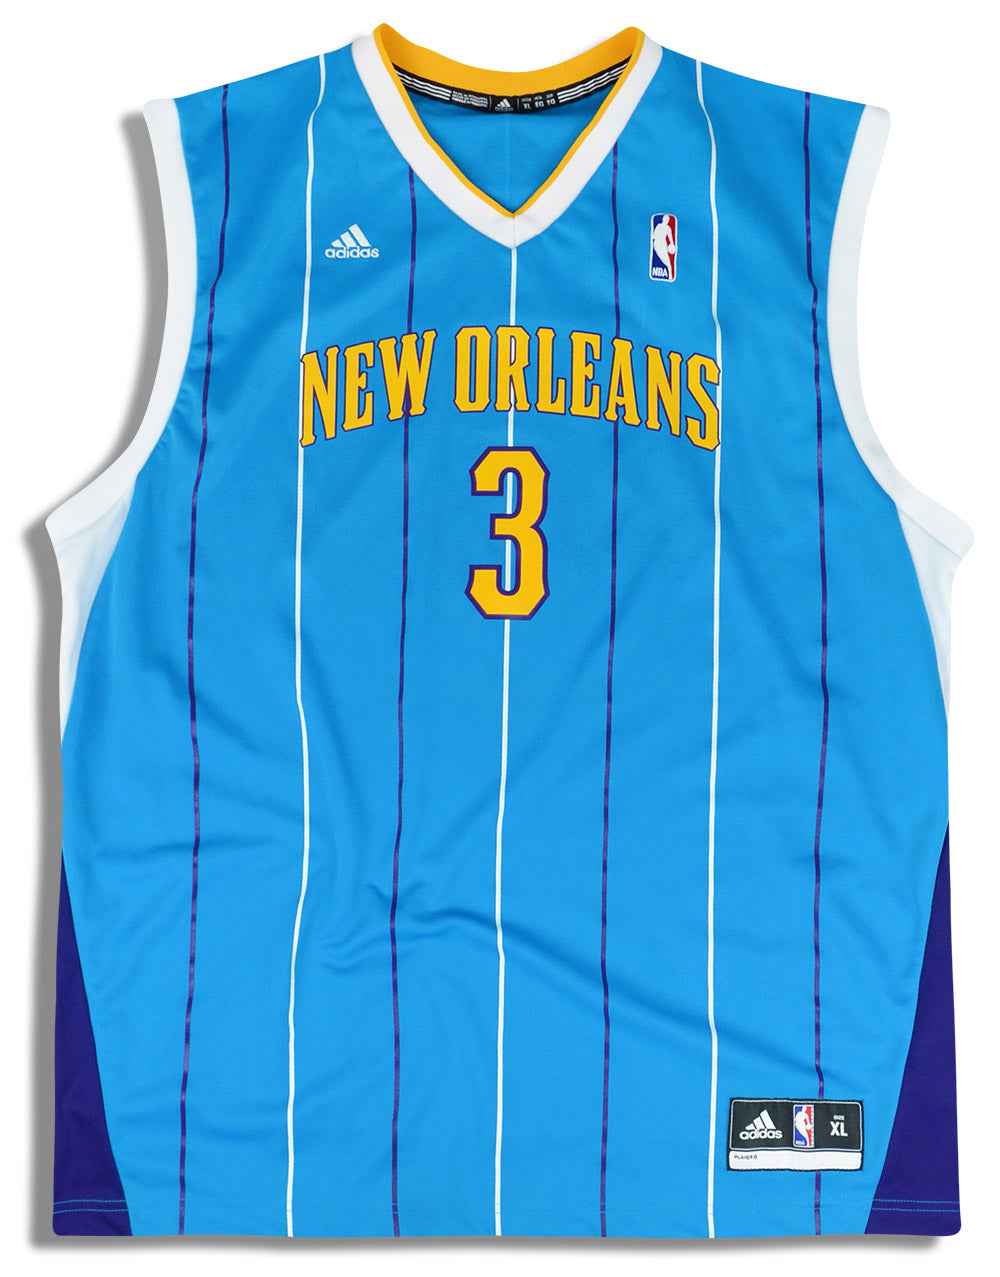 Adidas New Orleans Hornets Jersey #3 Chris Paul Nba